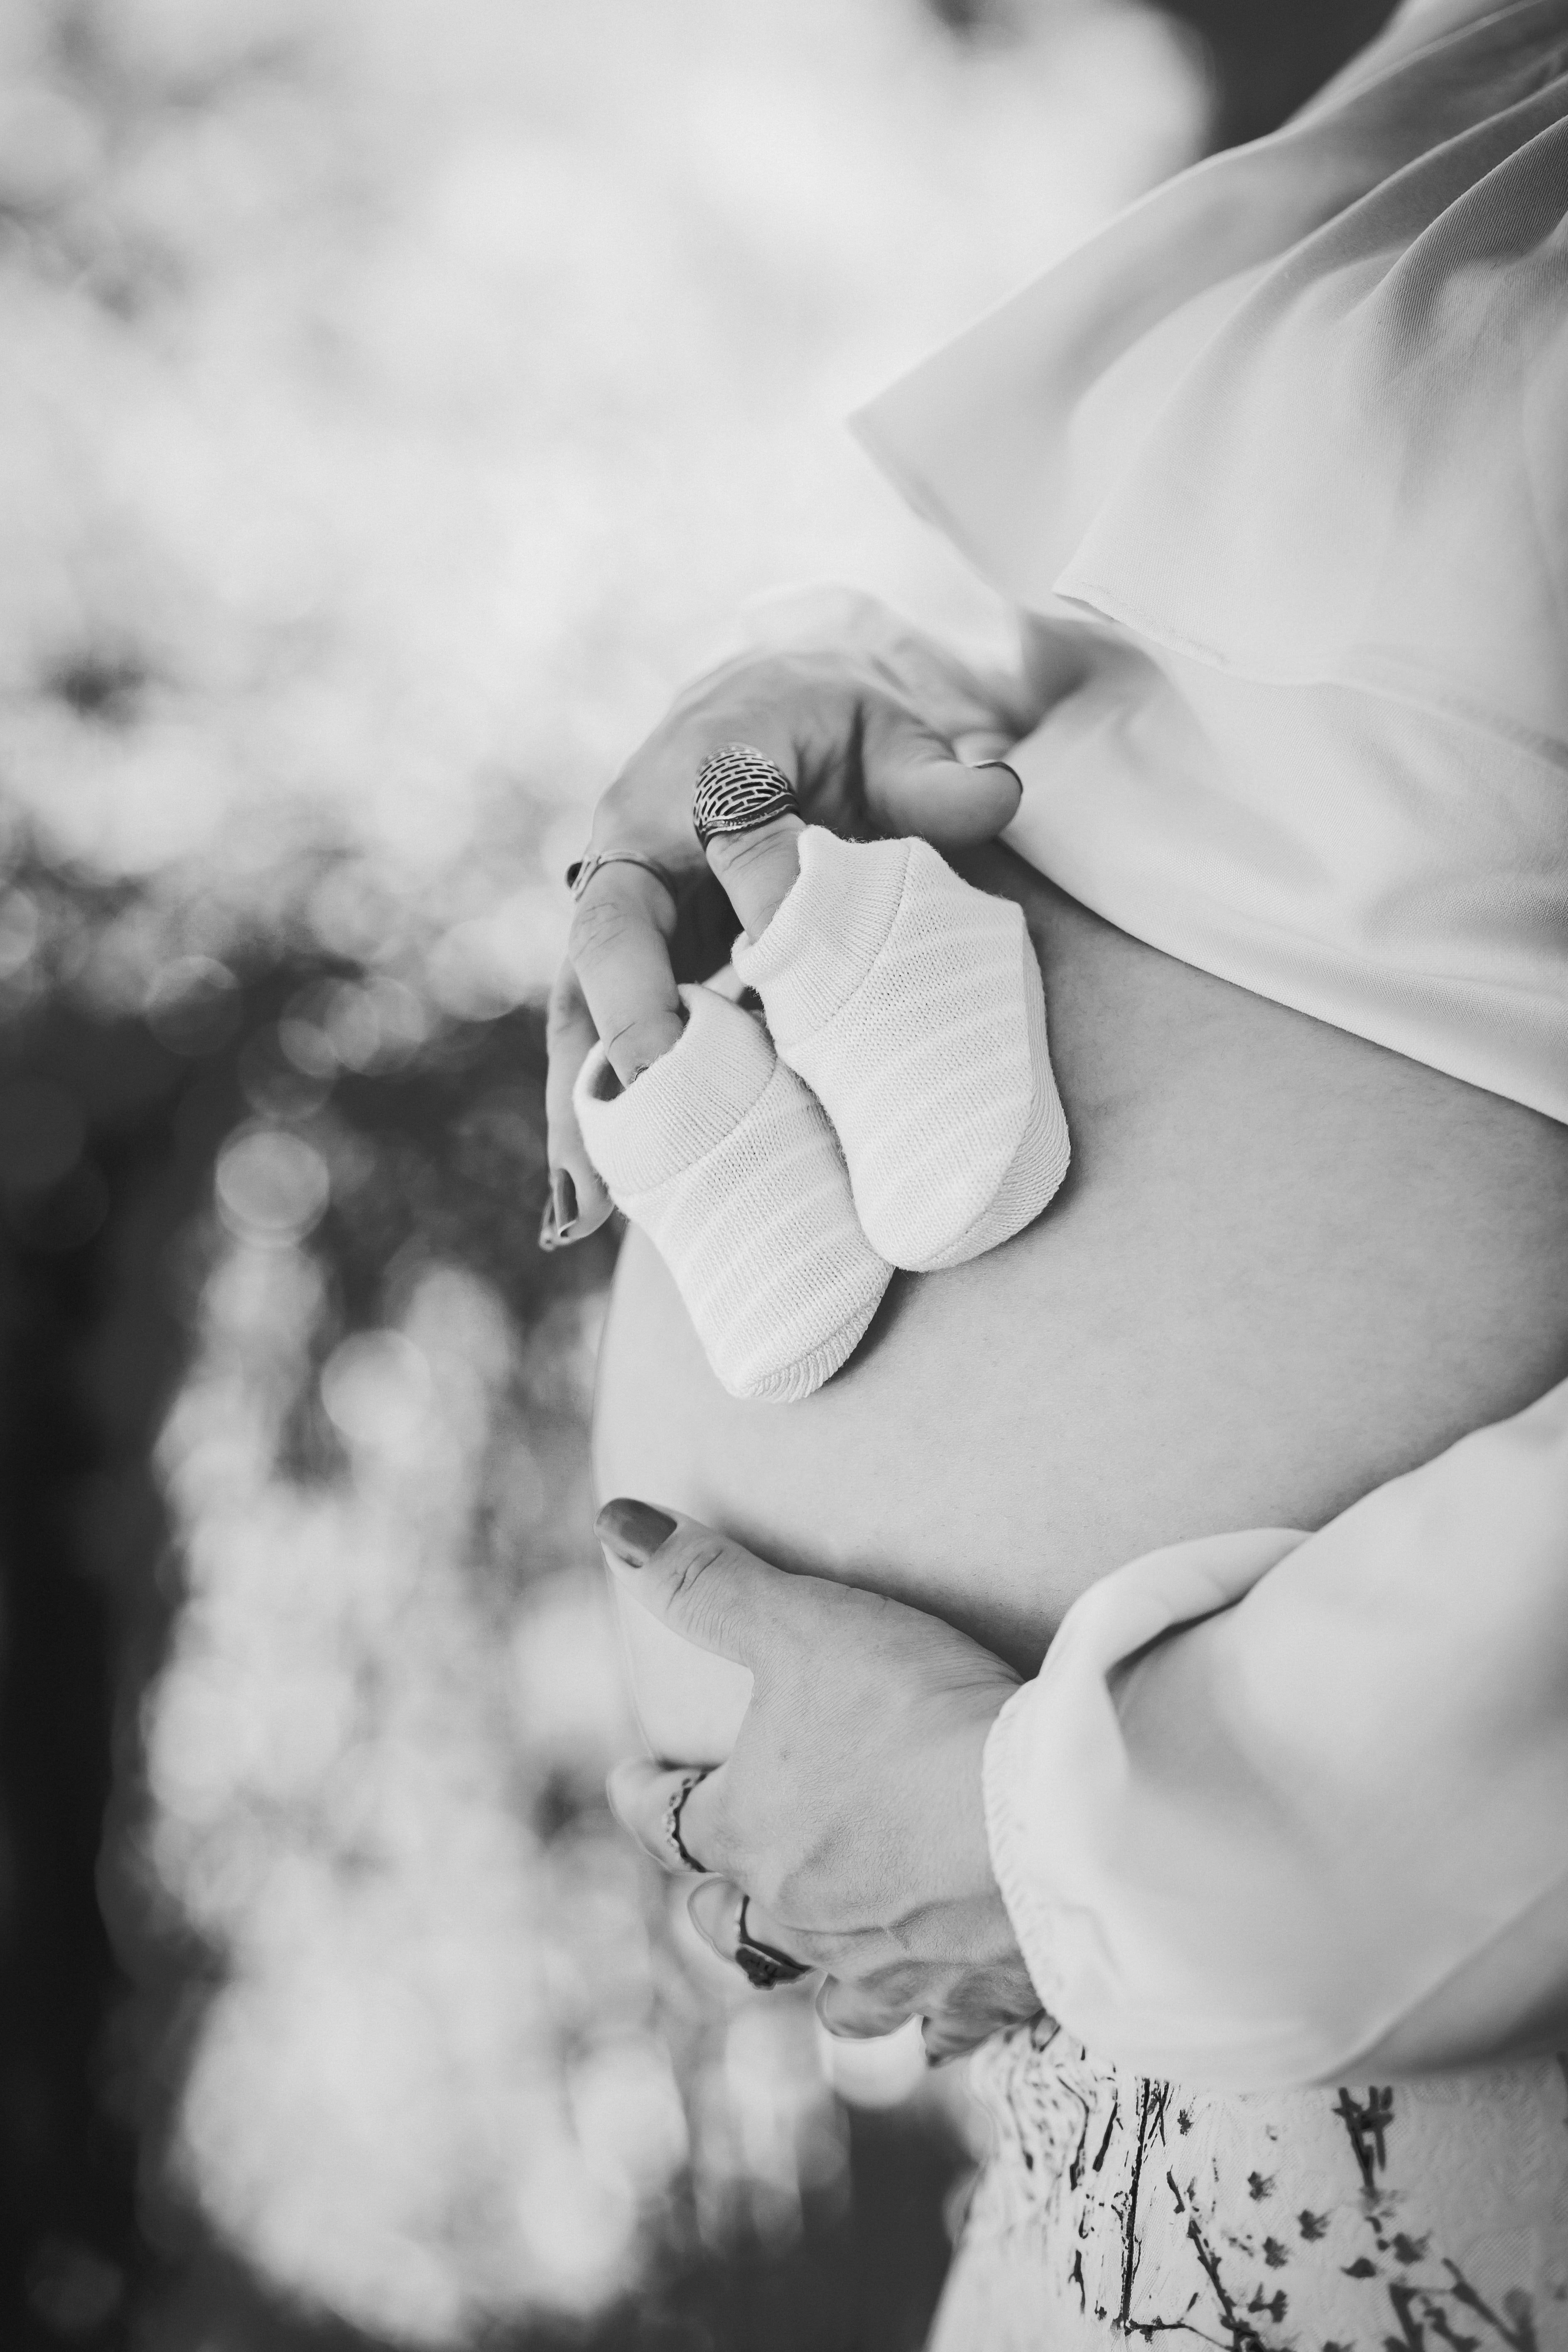 Graustufenfoto des schwangeren Bauches. | Quelle: Pexels